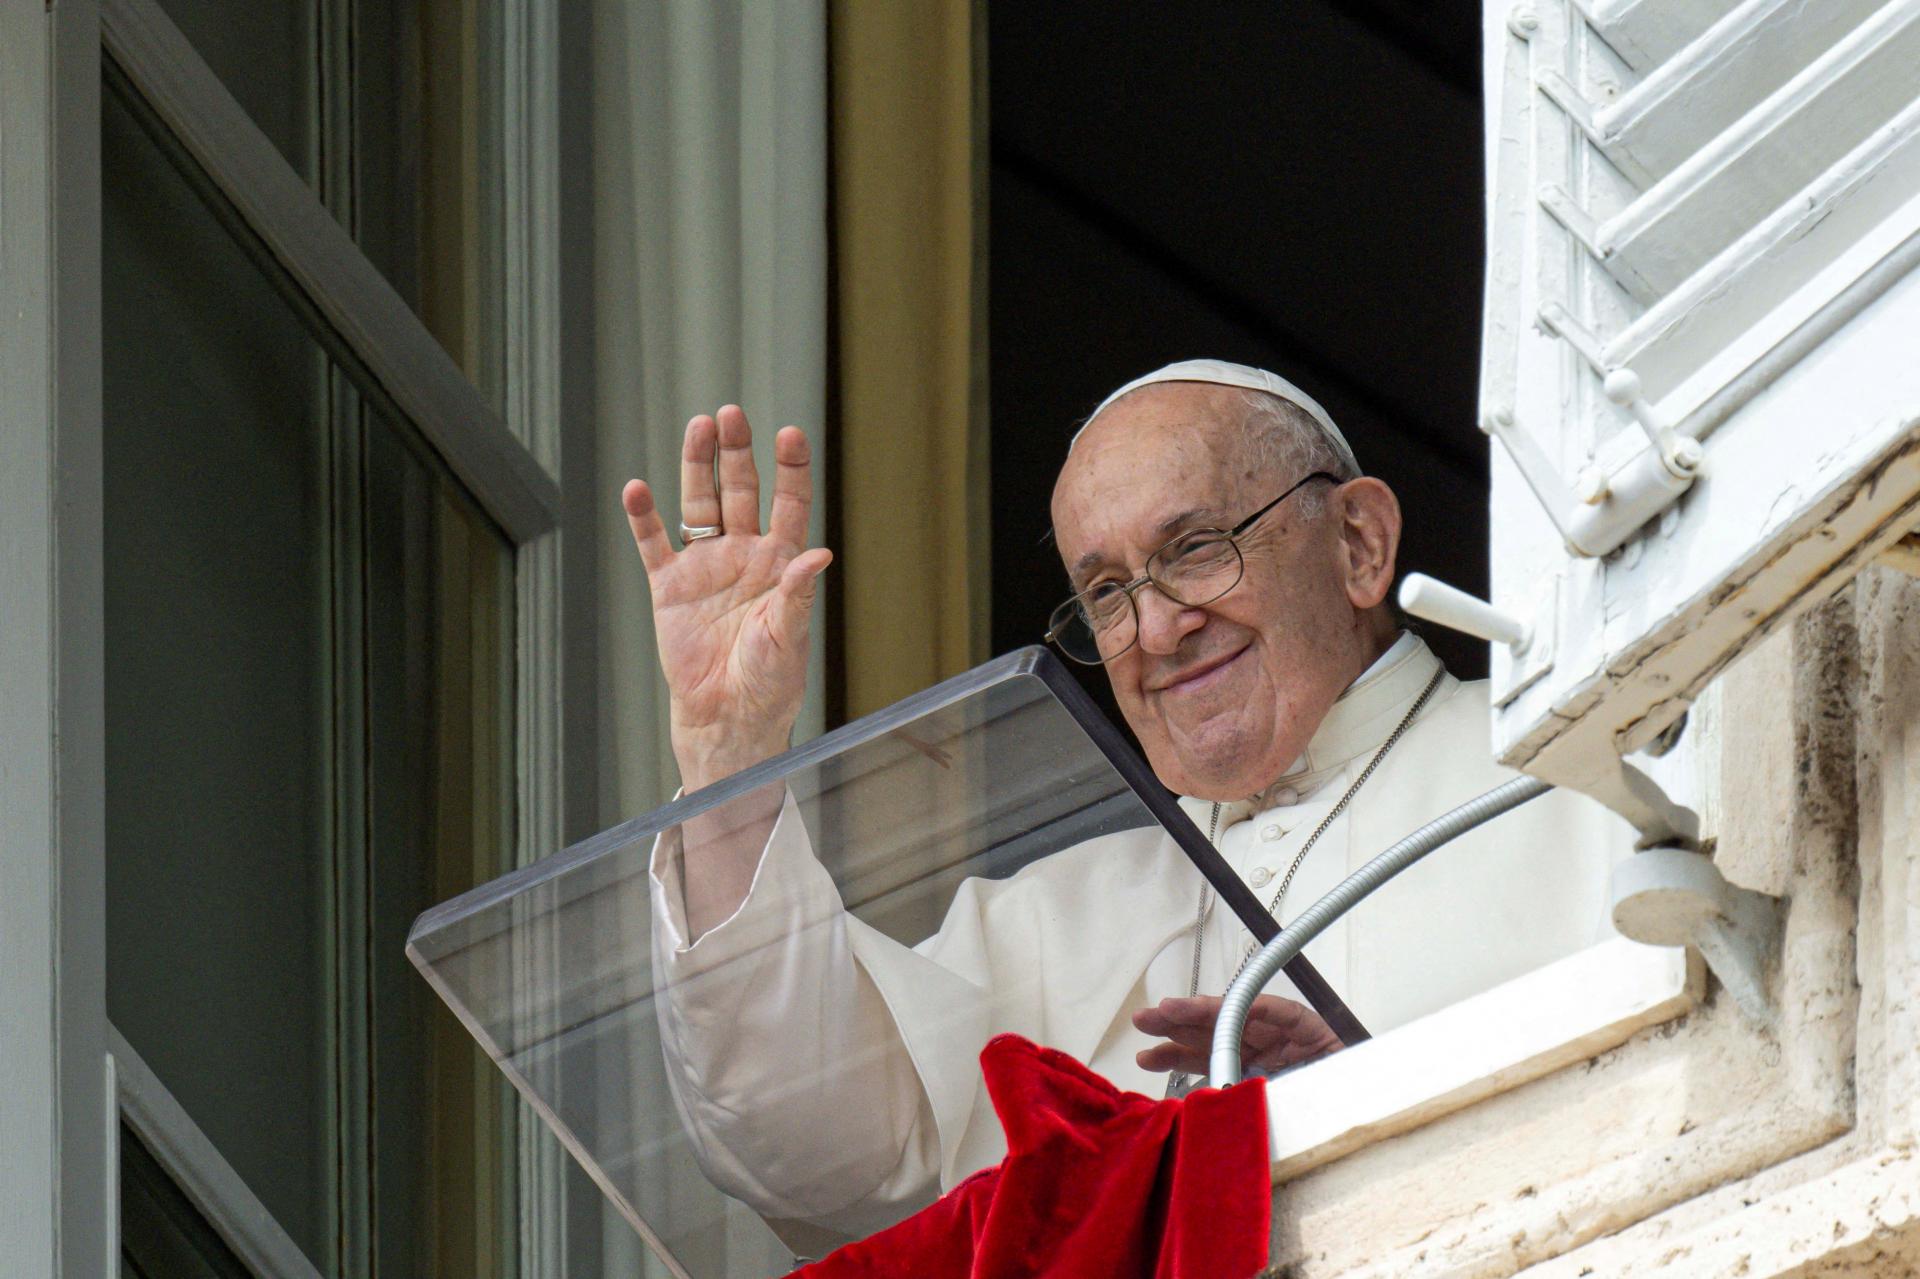 Pápež František sa sťažoval na spiatočnícke postoje v katolíckej cirkvi v Spojených štátoch